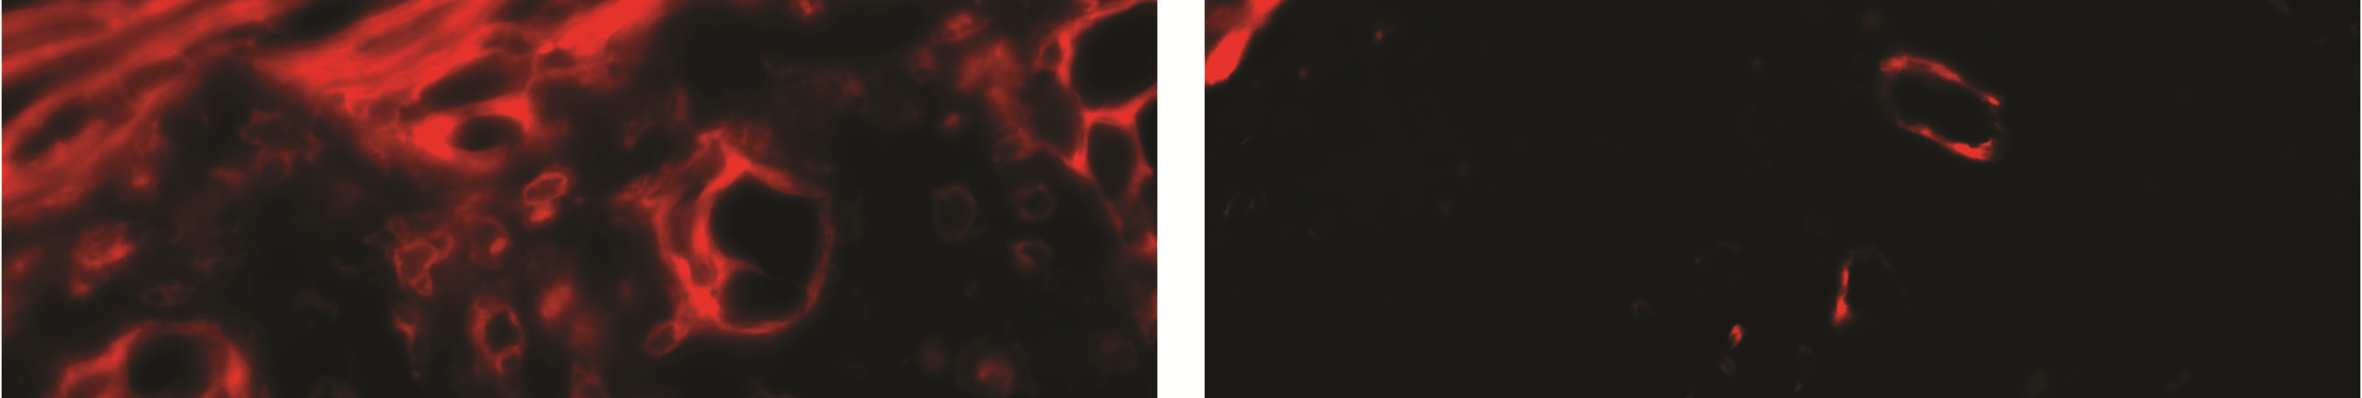 34. ábra A TNFR-I/II immunfluoreszcens megjelenése otosclerosisban. A1: Az otosclerosis aktív stádiuma (HE).